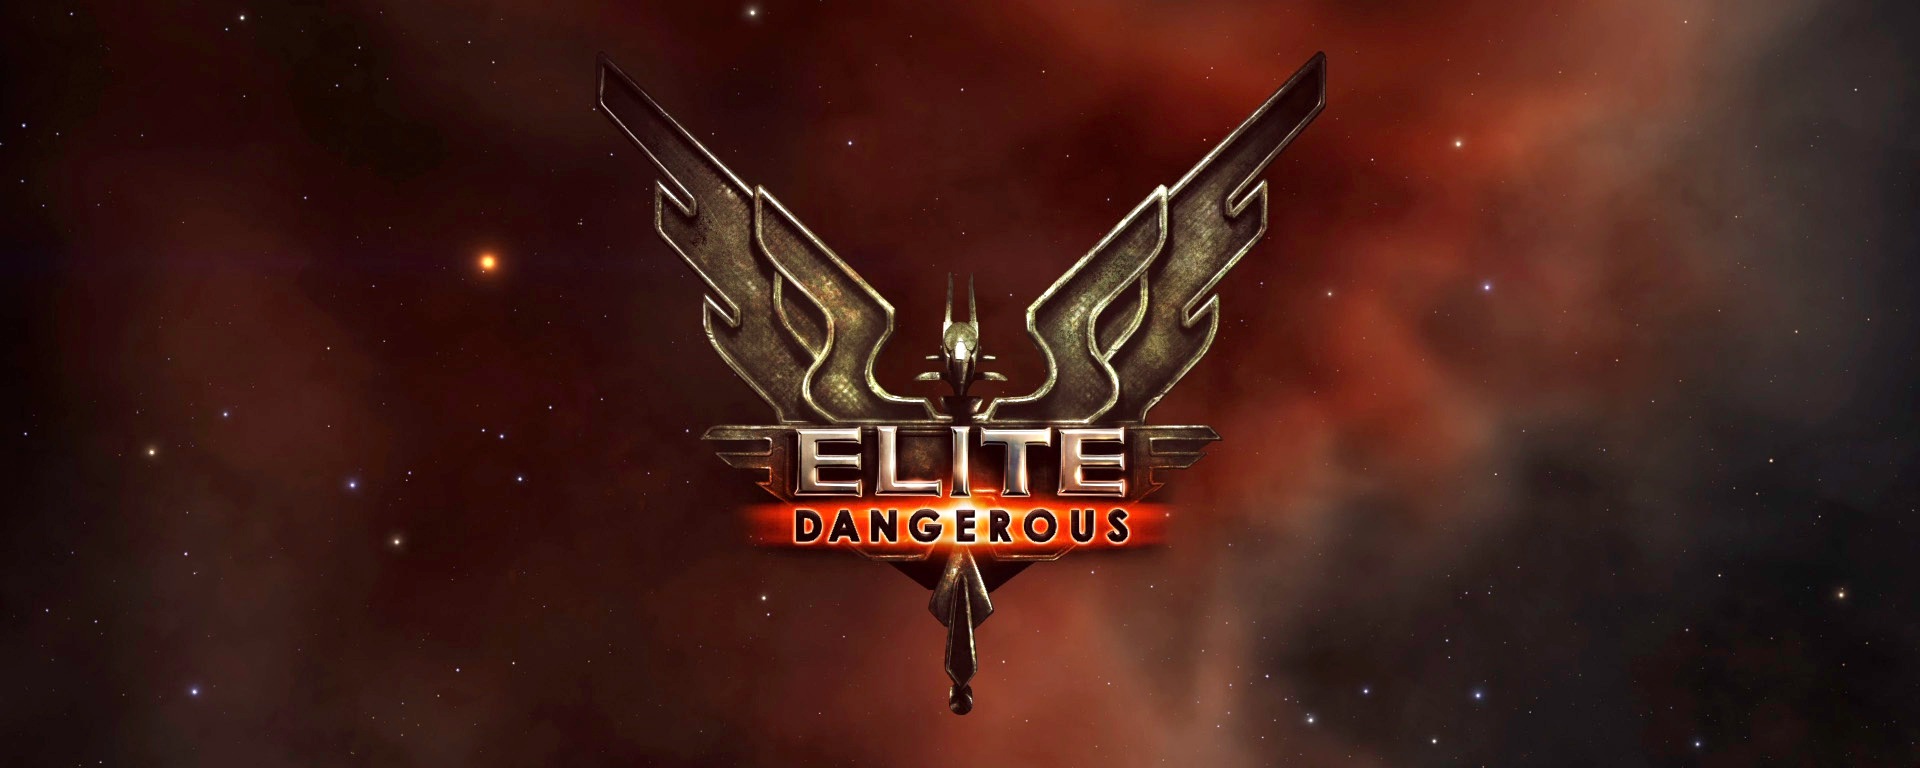 Elite Dangerous: Legendary Edition | Frontier Developments | GameStop